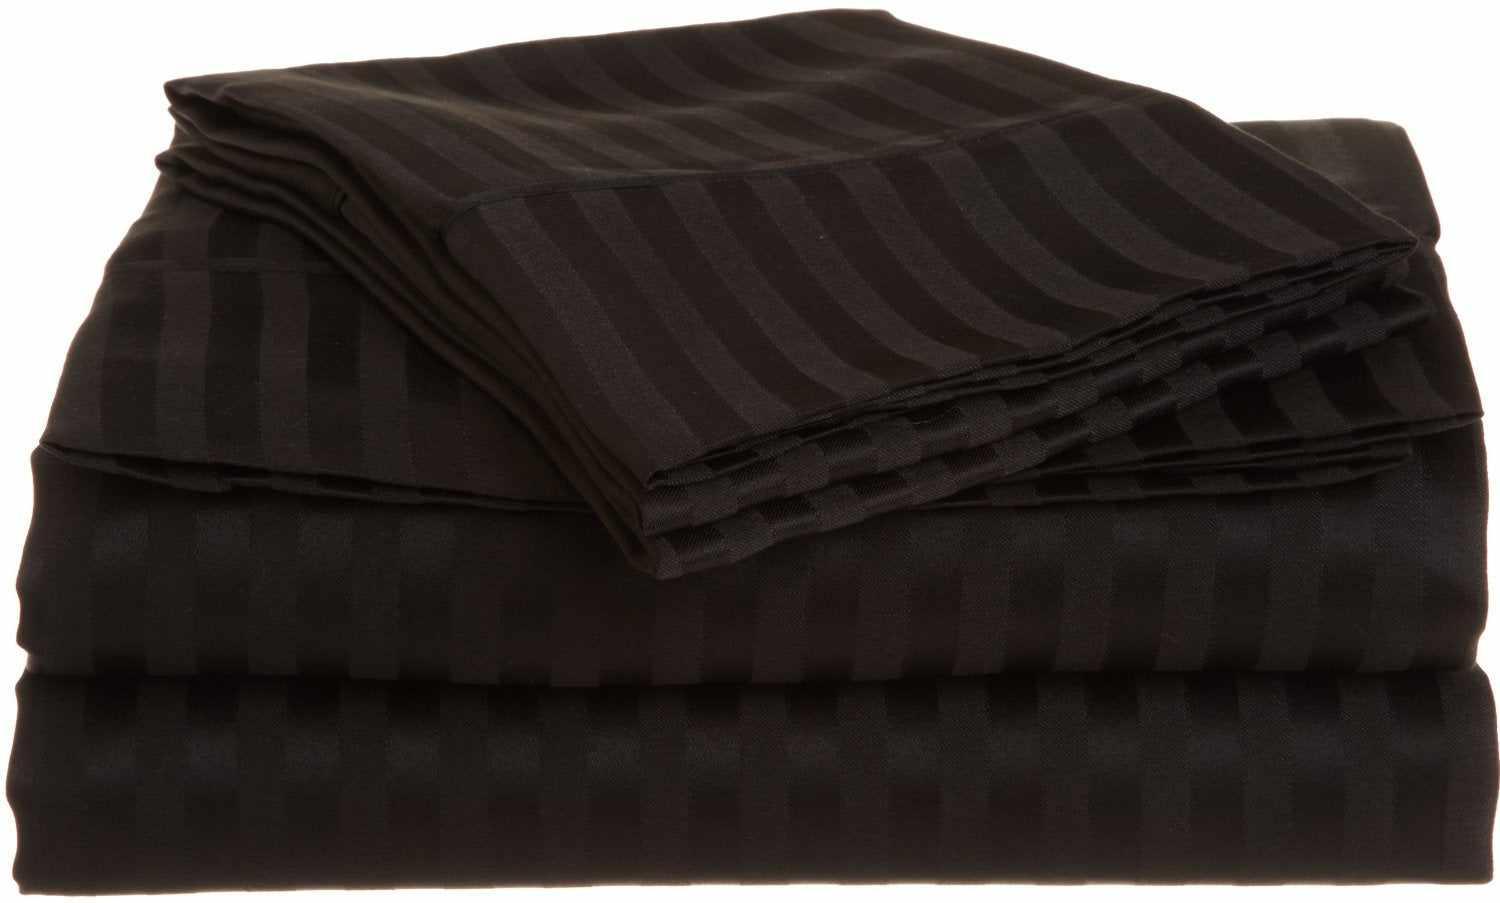 Superior Microfiber Wrinkle Resistant and Breathable Stripe Deep Pocket Bed Sheet Set - Black